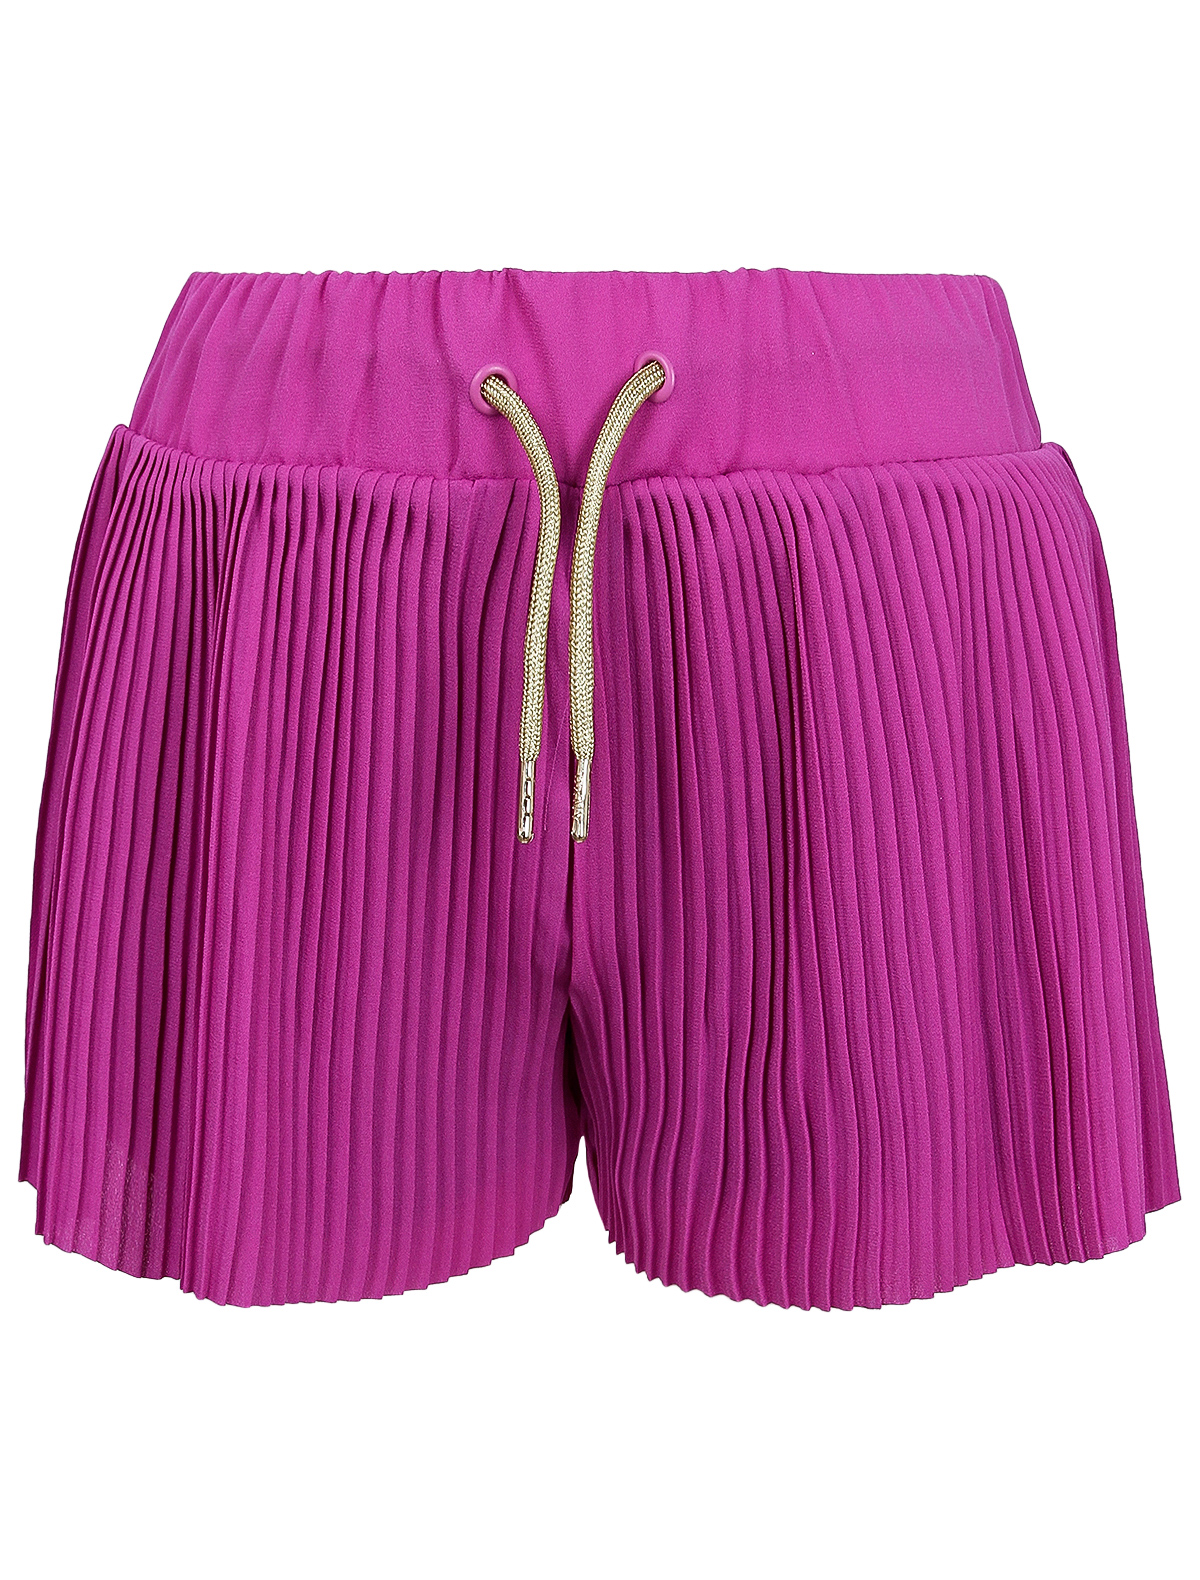 Шорты DKNY фиолетового цвета